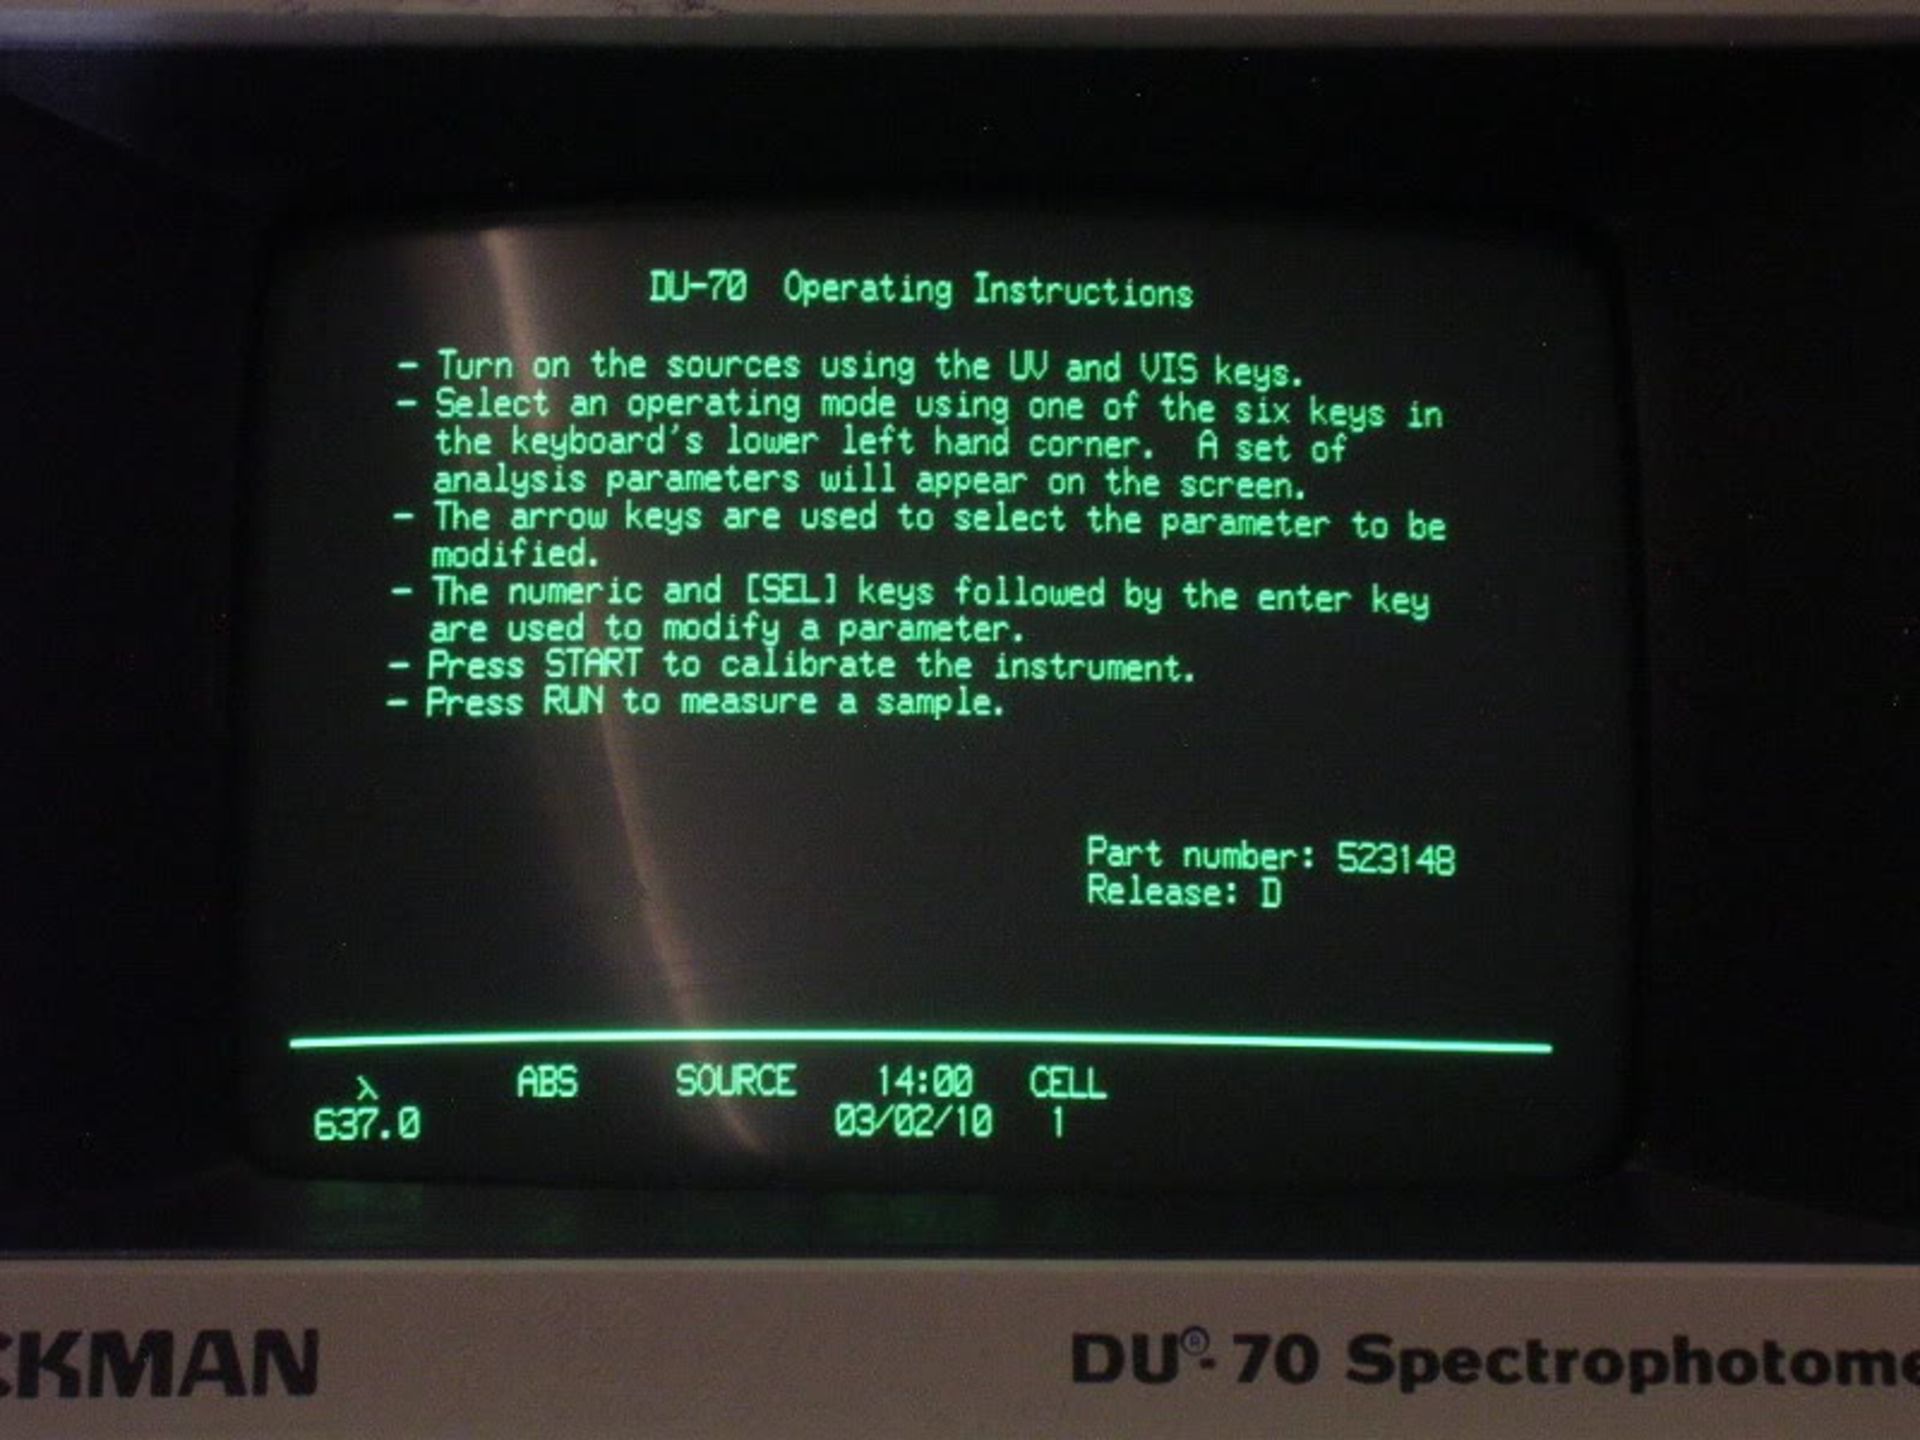 Beckman DU-70 Spectrophotometer, Qty 1, 320496598338 - Image 11 of 17